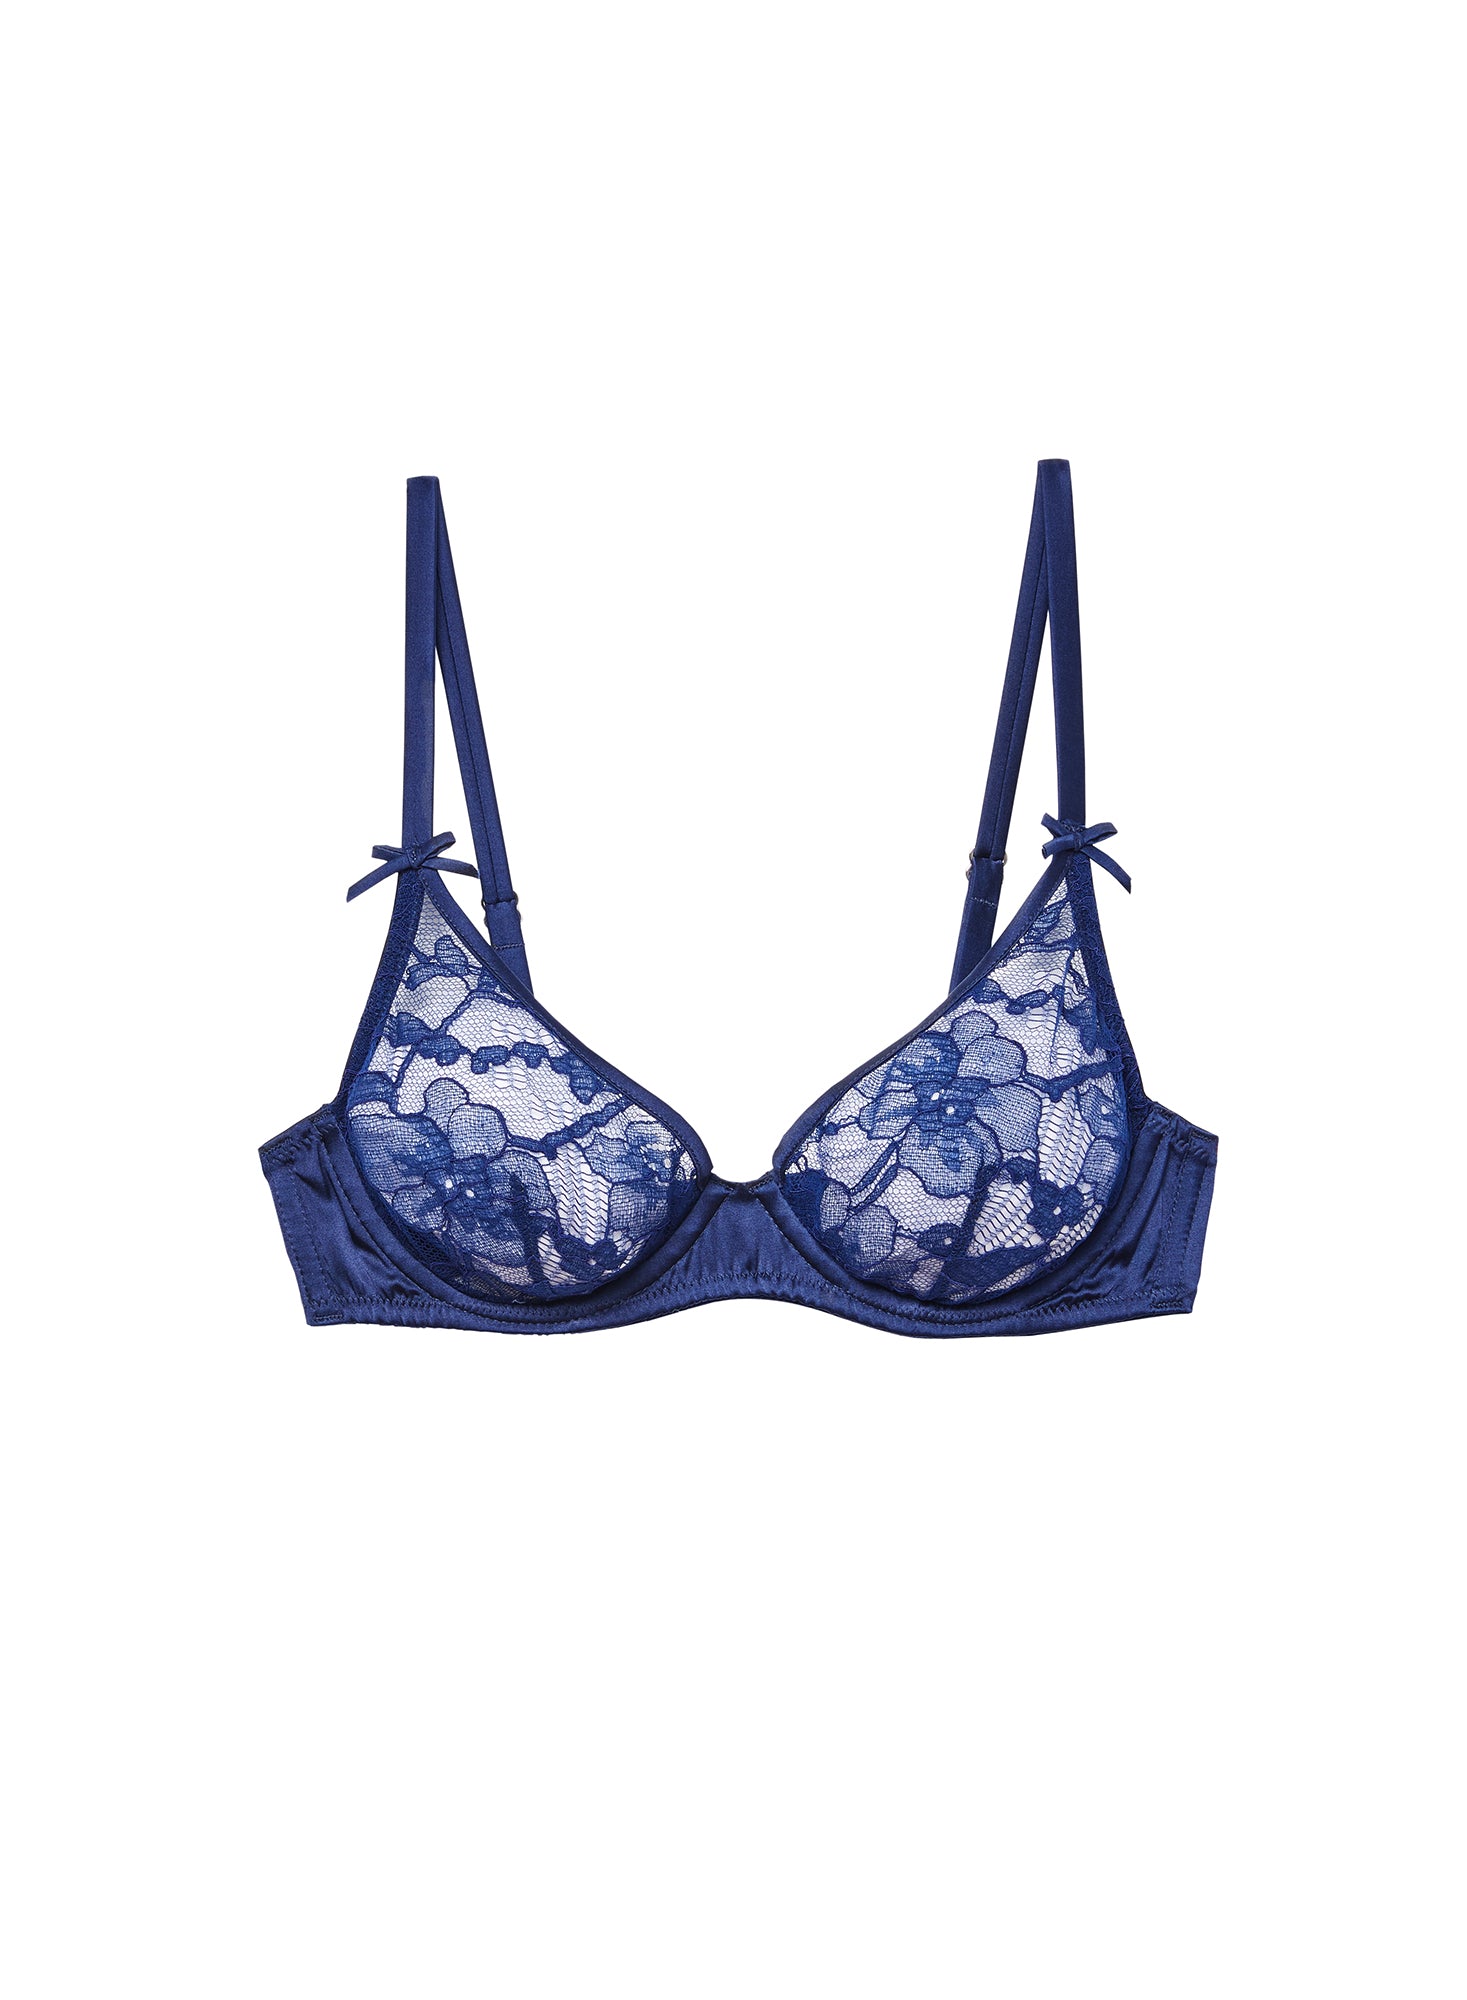 Victoria's Secret Luxe Lingerie Unlined Dragon Lace Balconette Bra 3 piece  Set 